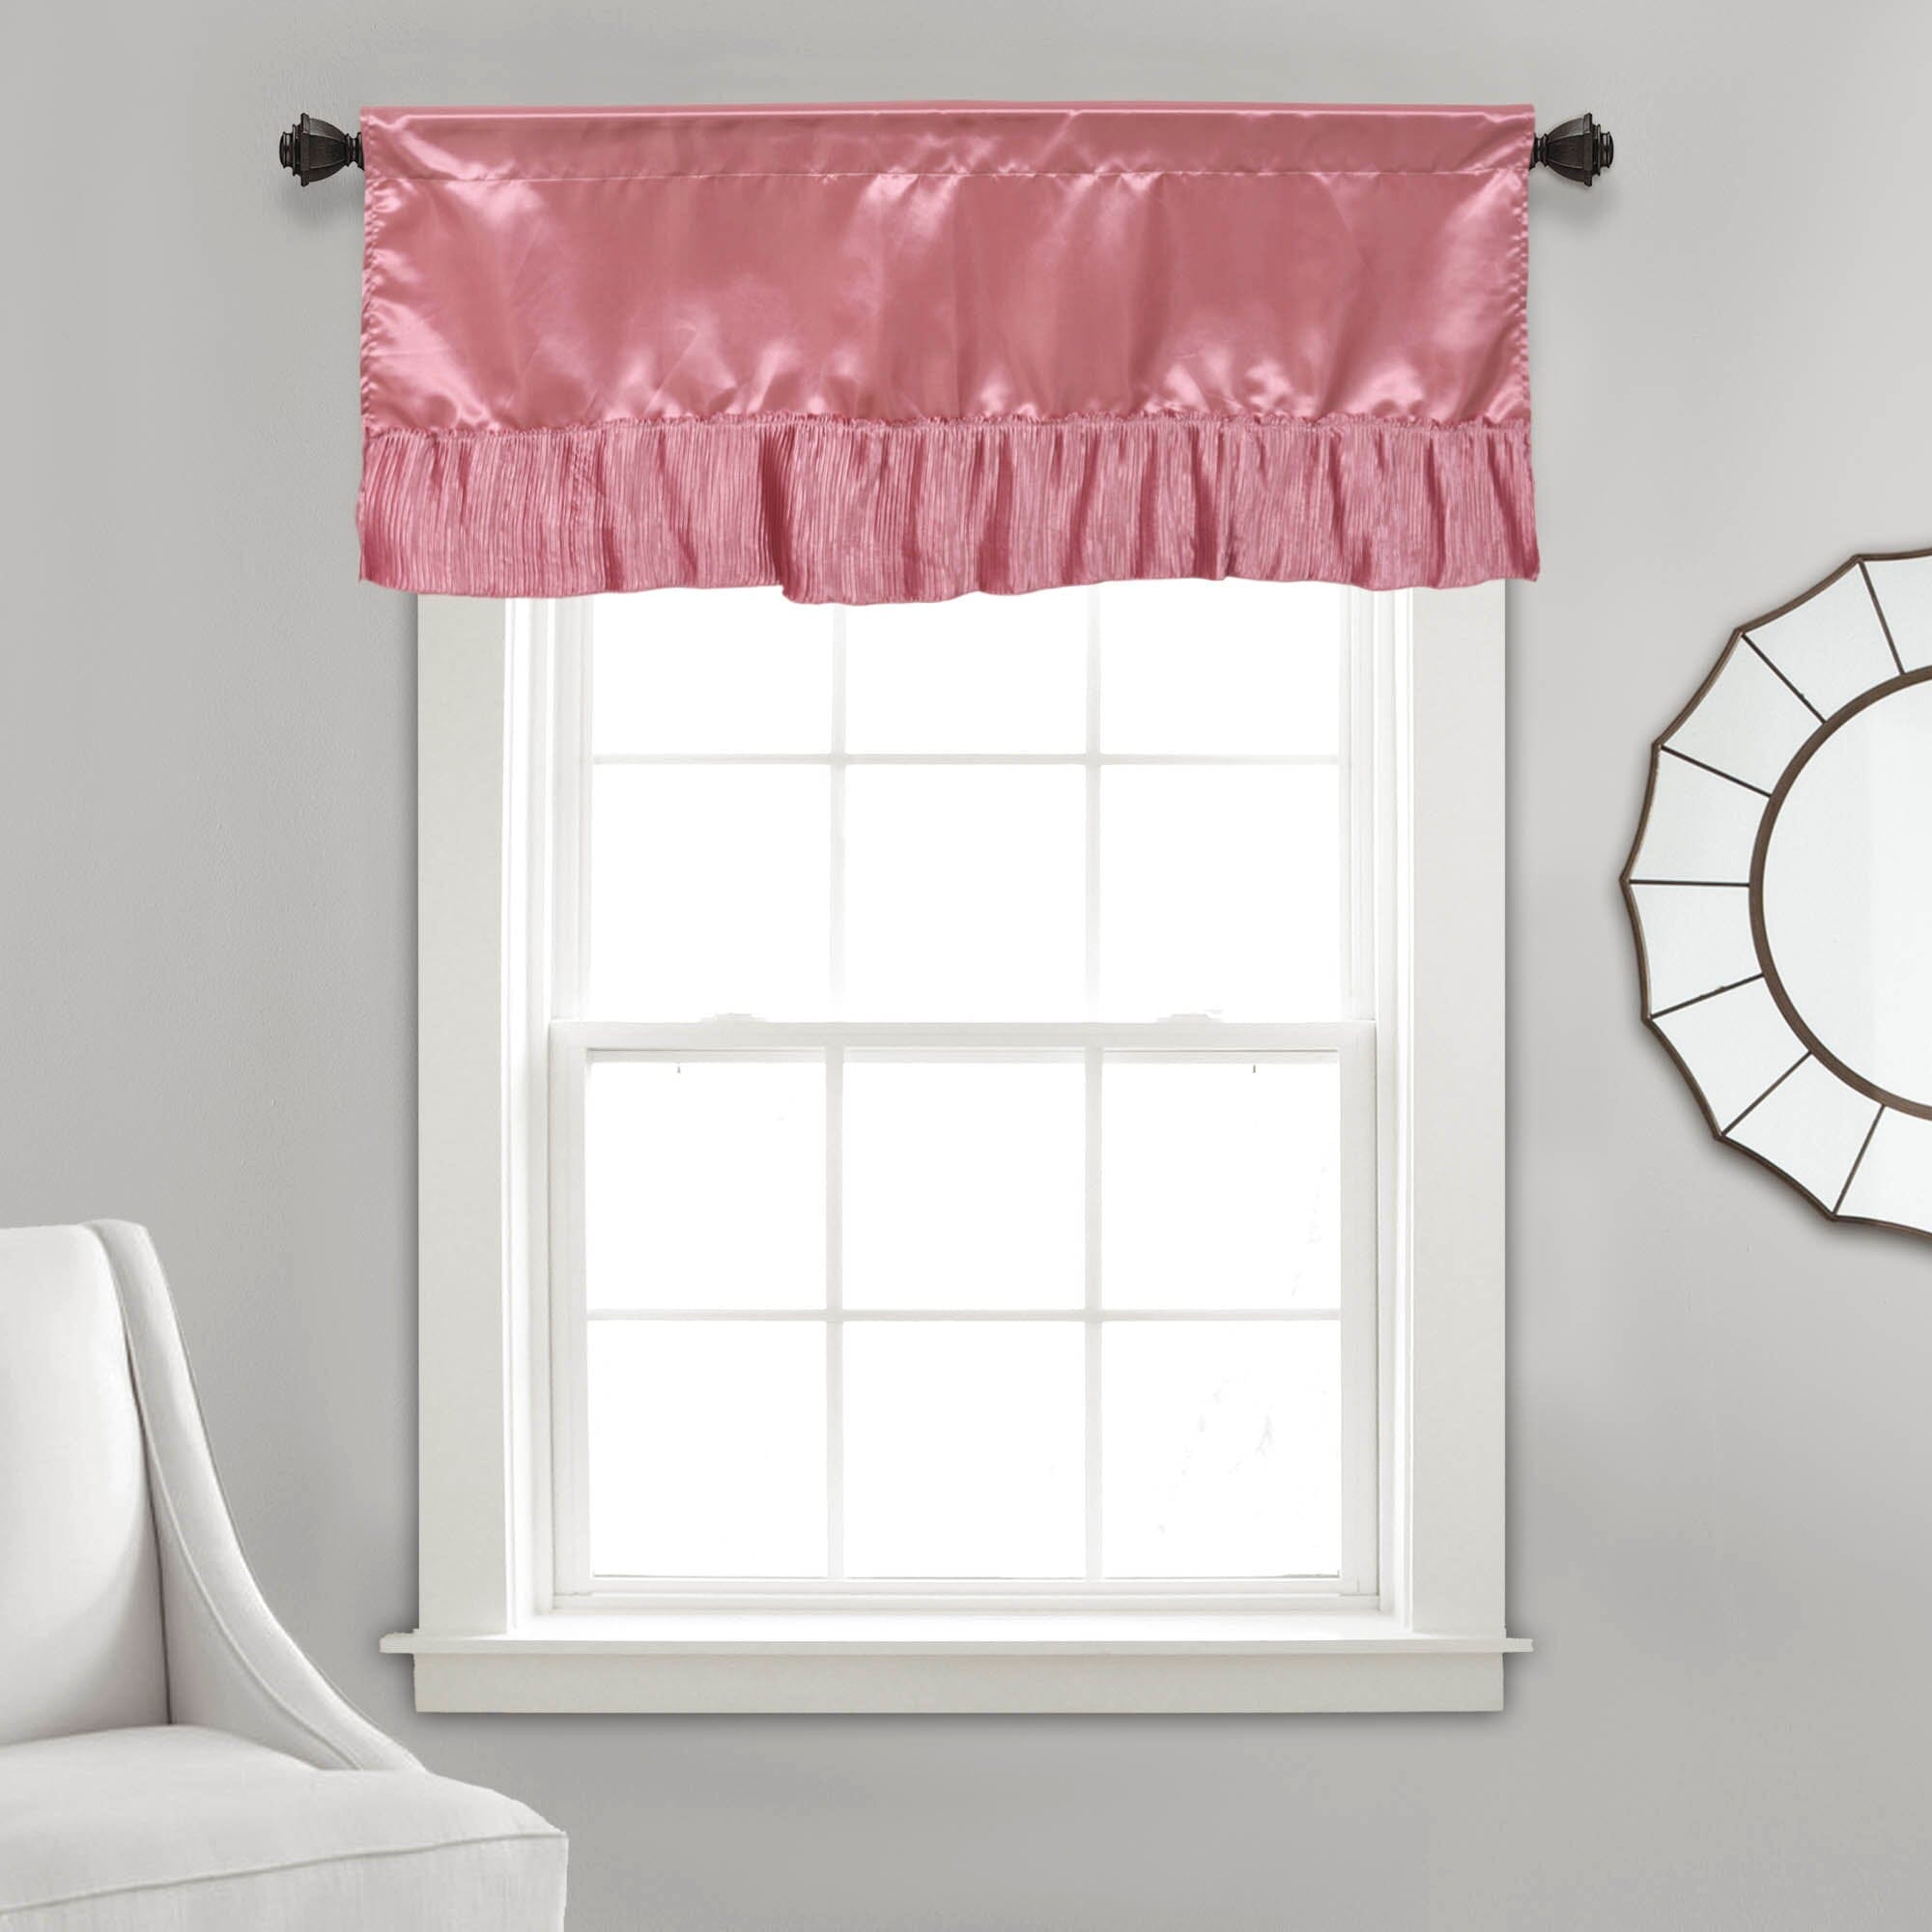 Tache Satin Ruffle Sweet Victorian Window Curtain Tailored Valance 18x52" Pink (MZ002) - Tache Home Fashion